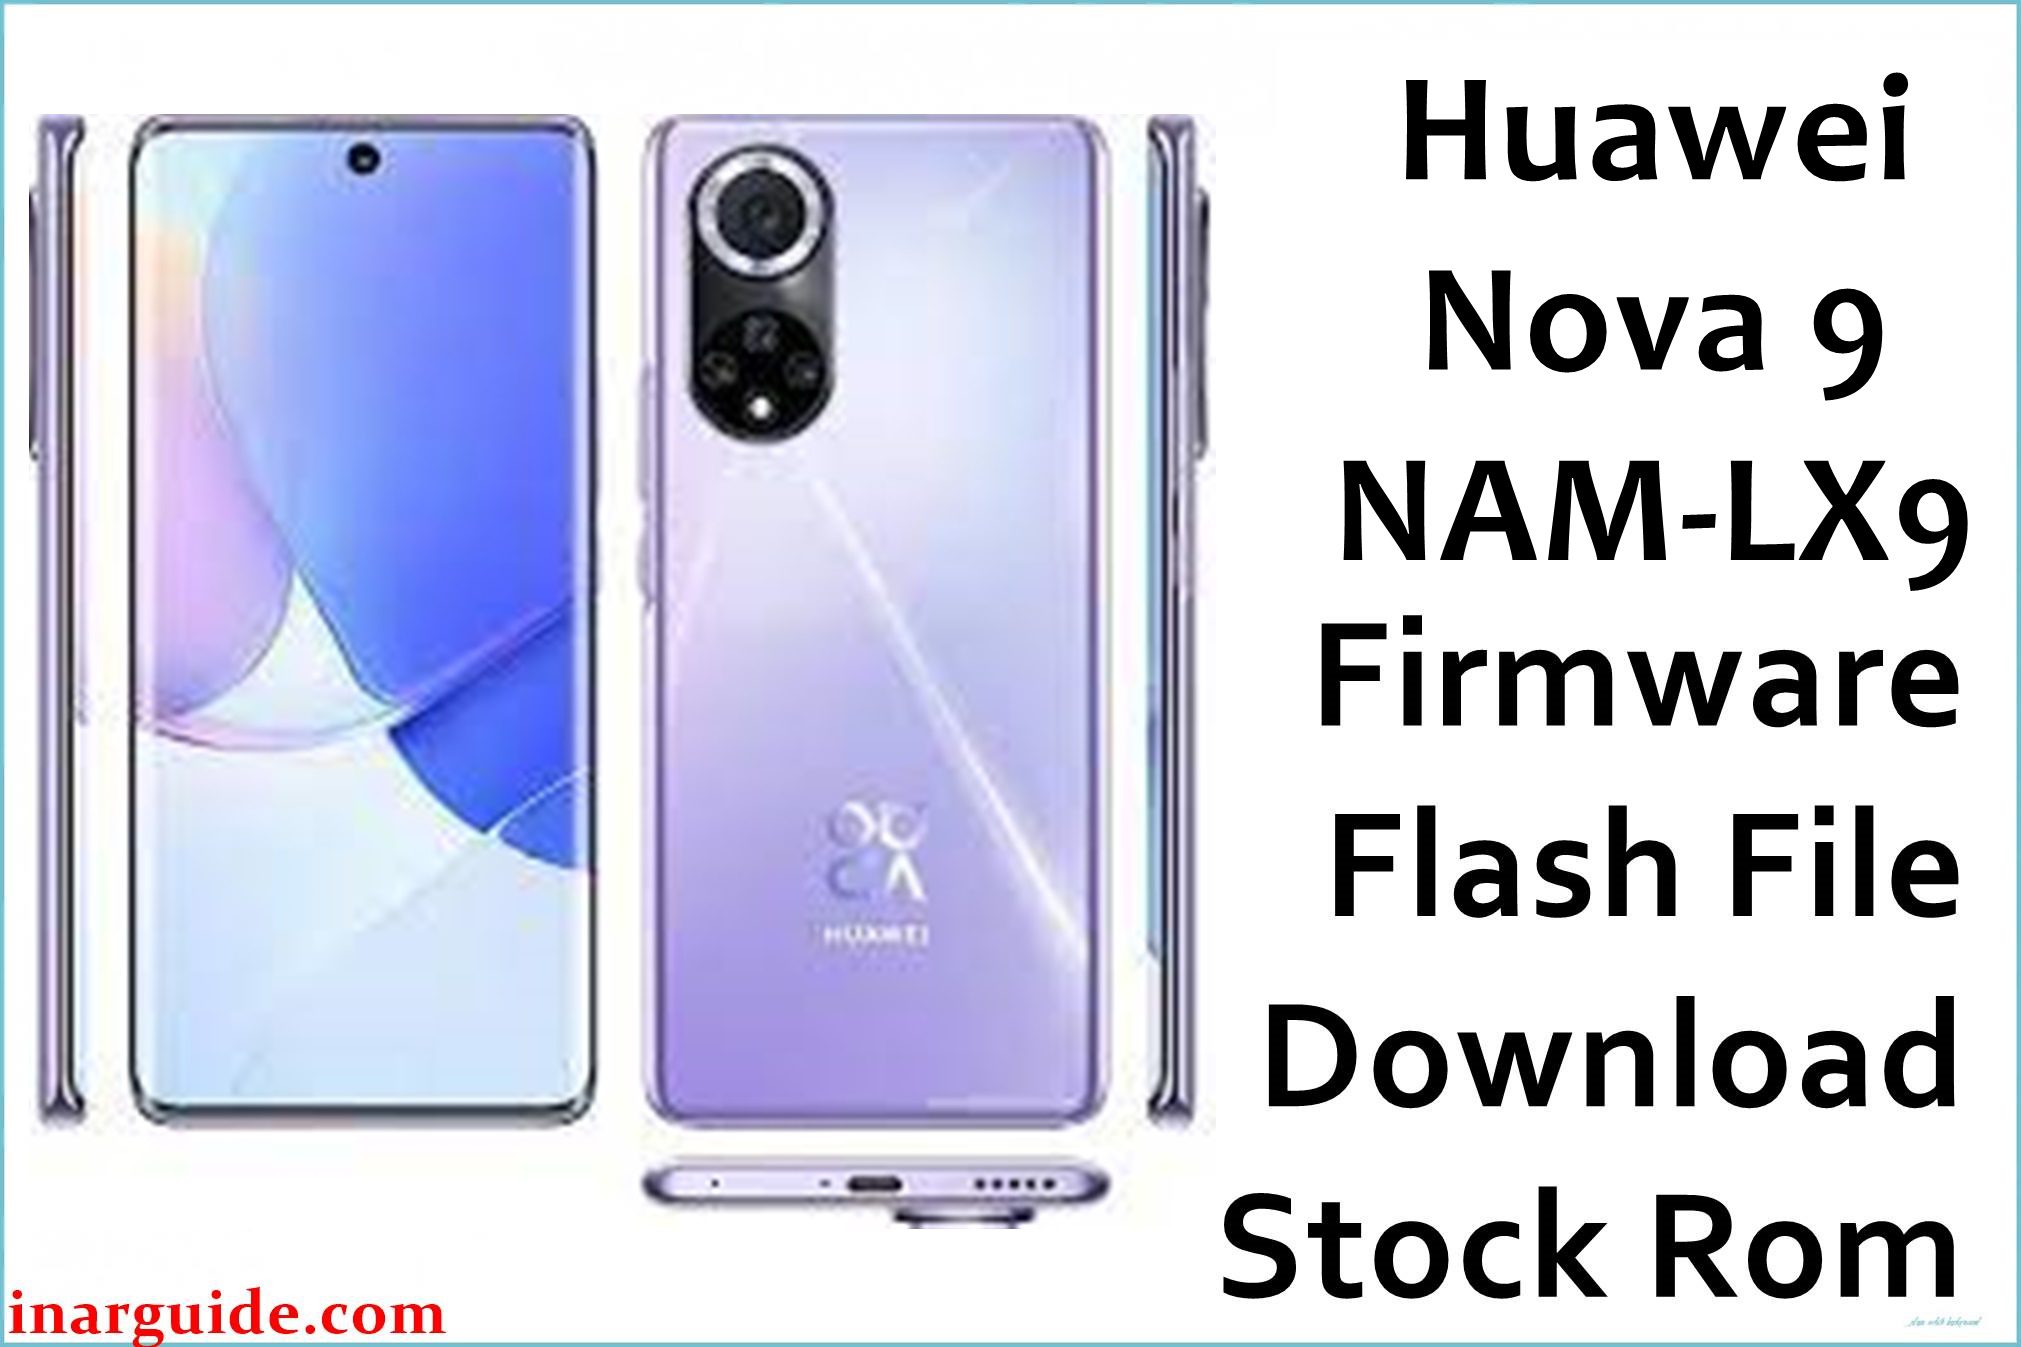 Huawei nam-lx9.